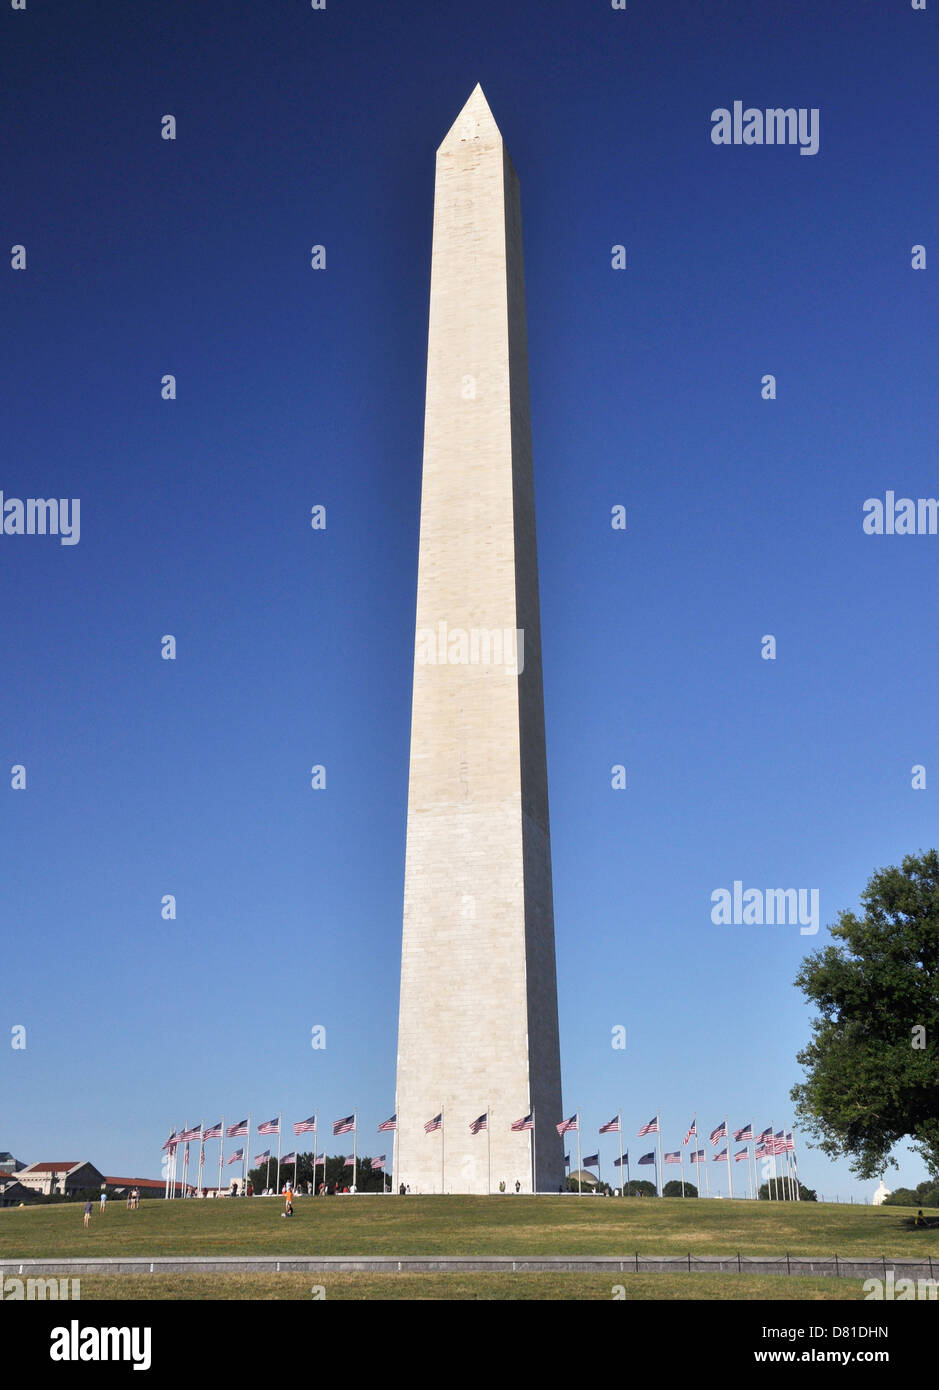 La Washington monumento nazionale. Il più alto obelisco nel mondo. Il monumento celebra la George Washington primo Presidente degli Stati Uniti Foto Stock